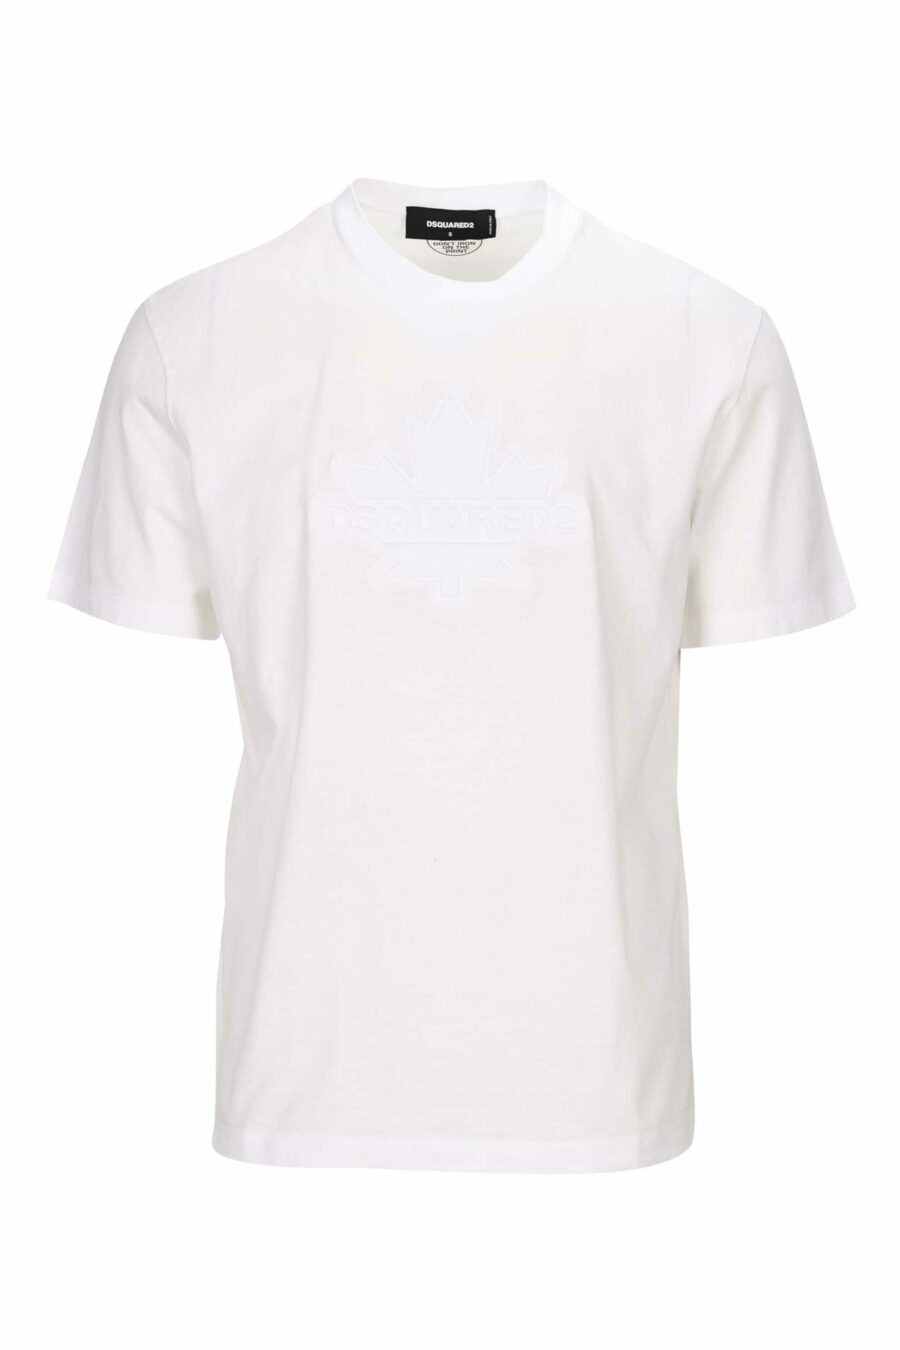 Camiseta blanca con maxilogo hoja monocromático en relieve - 8054148265830 scaled